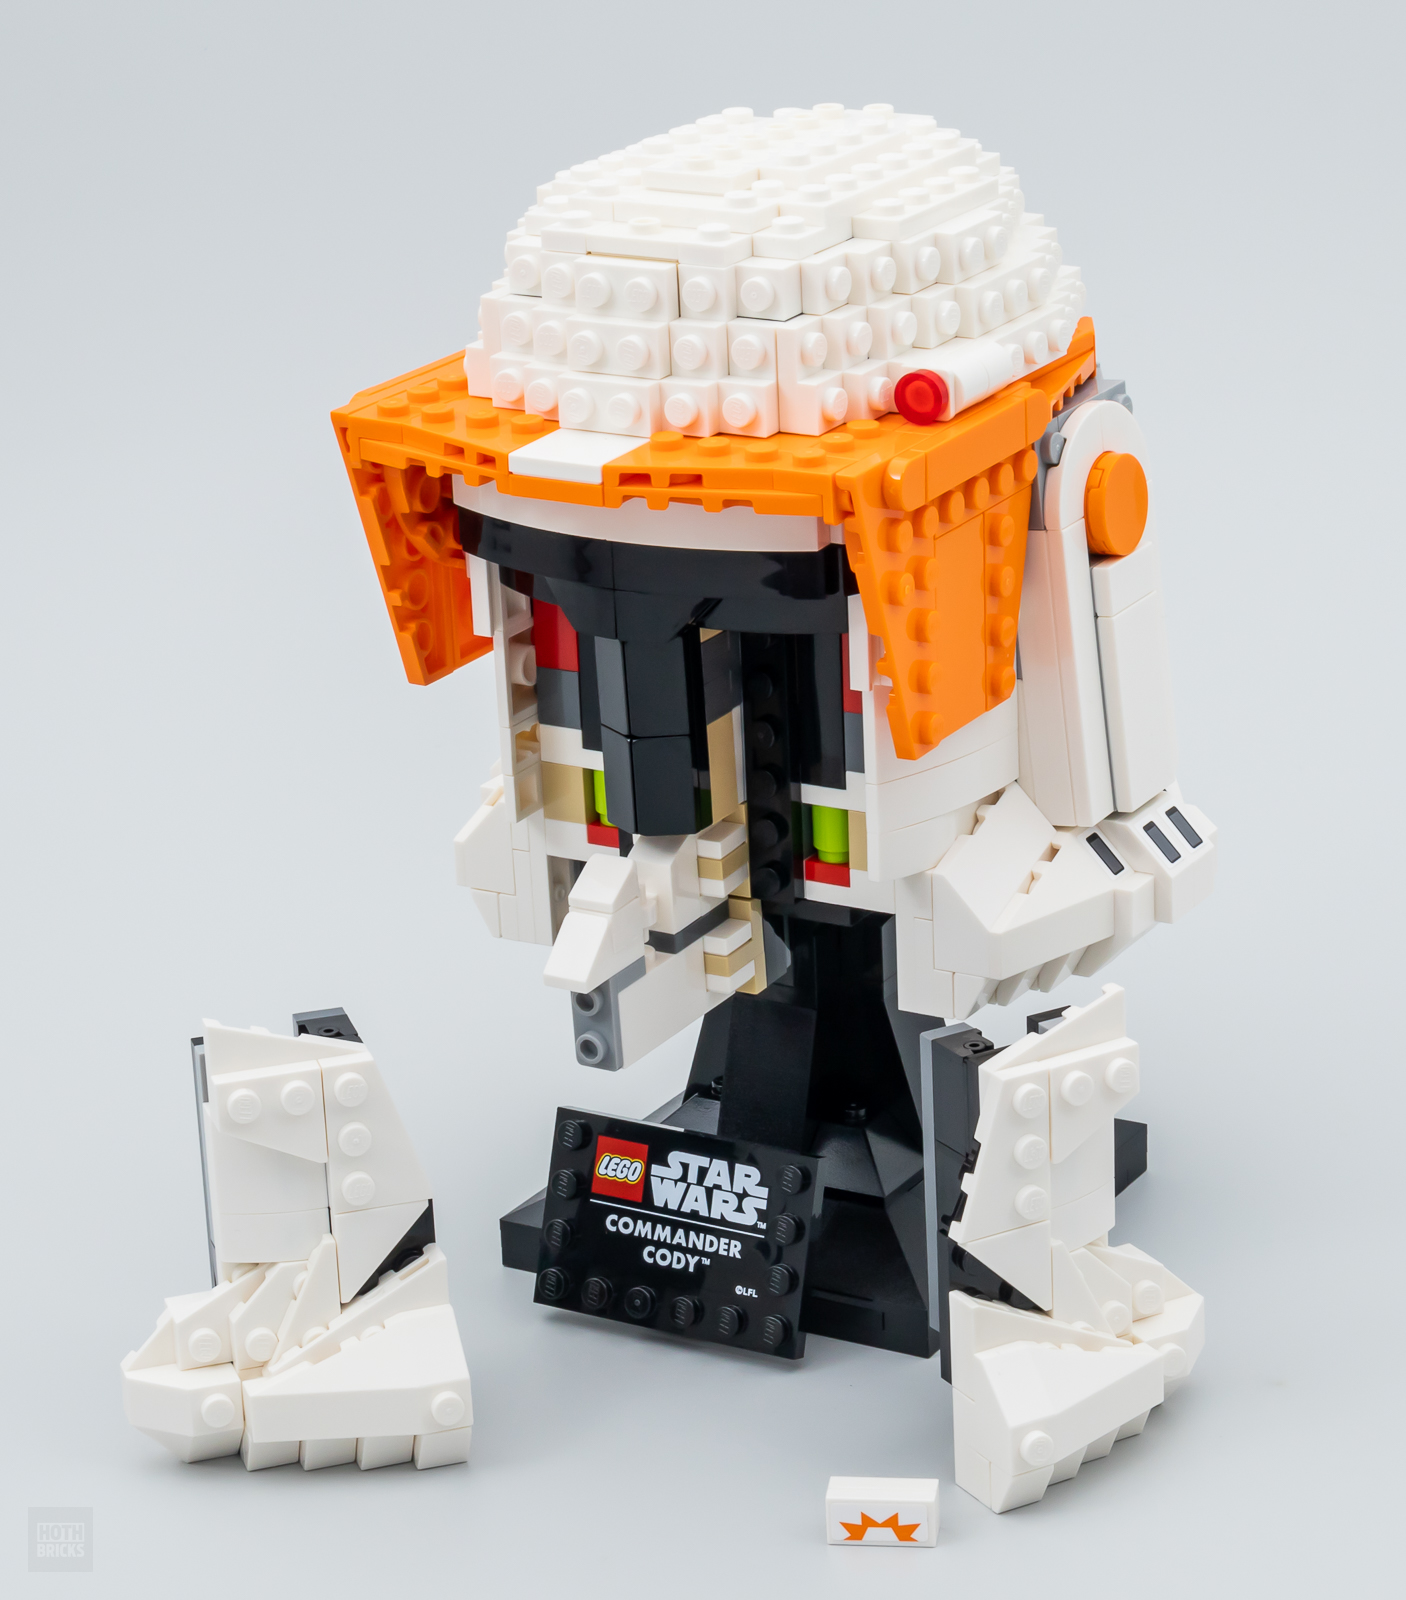 LEGO Star Wars 75350 pas cher, Le casque du Commandant clone Cody